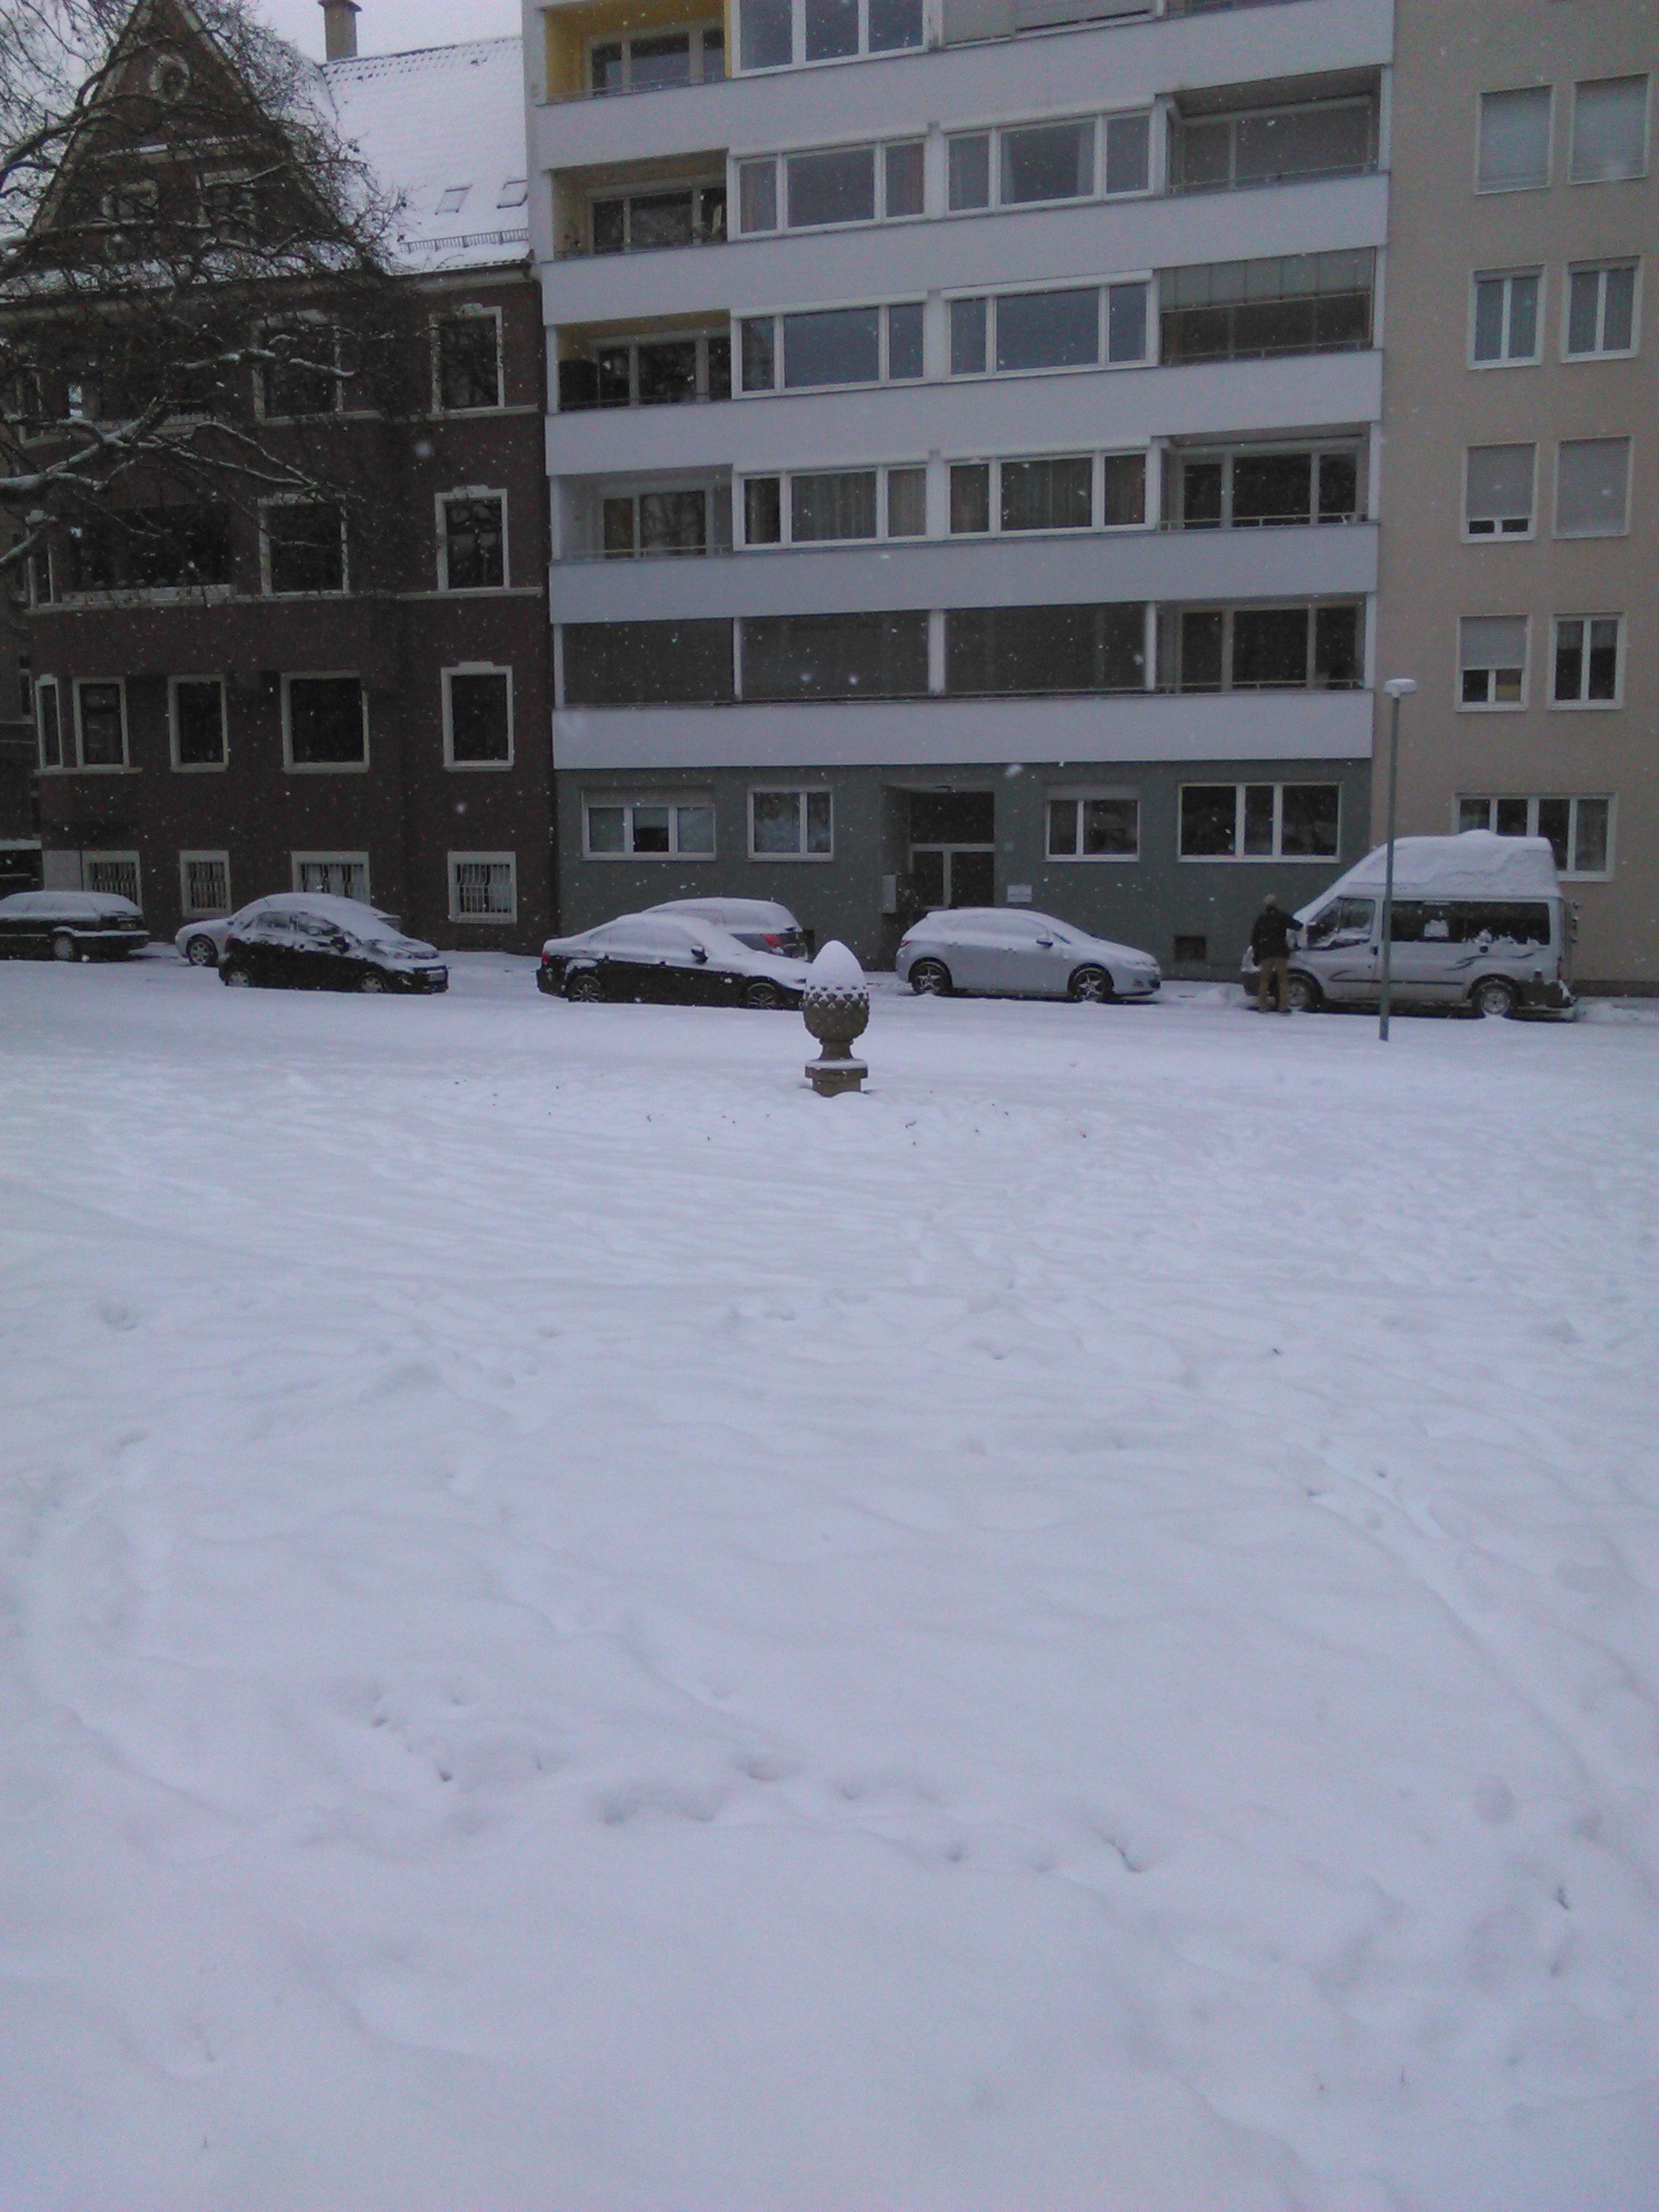 Augsburg im Schnee